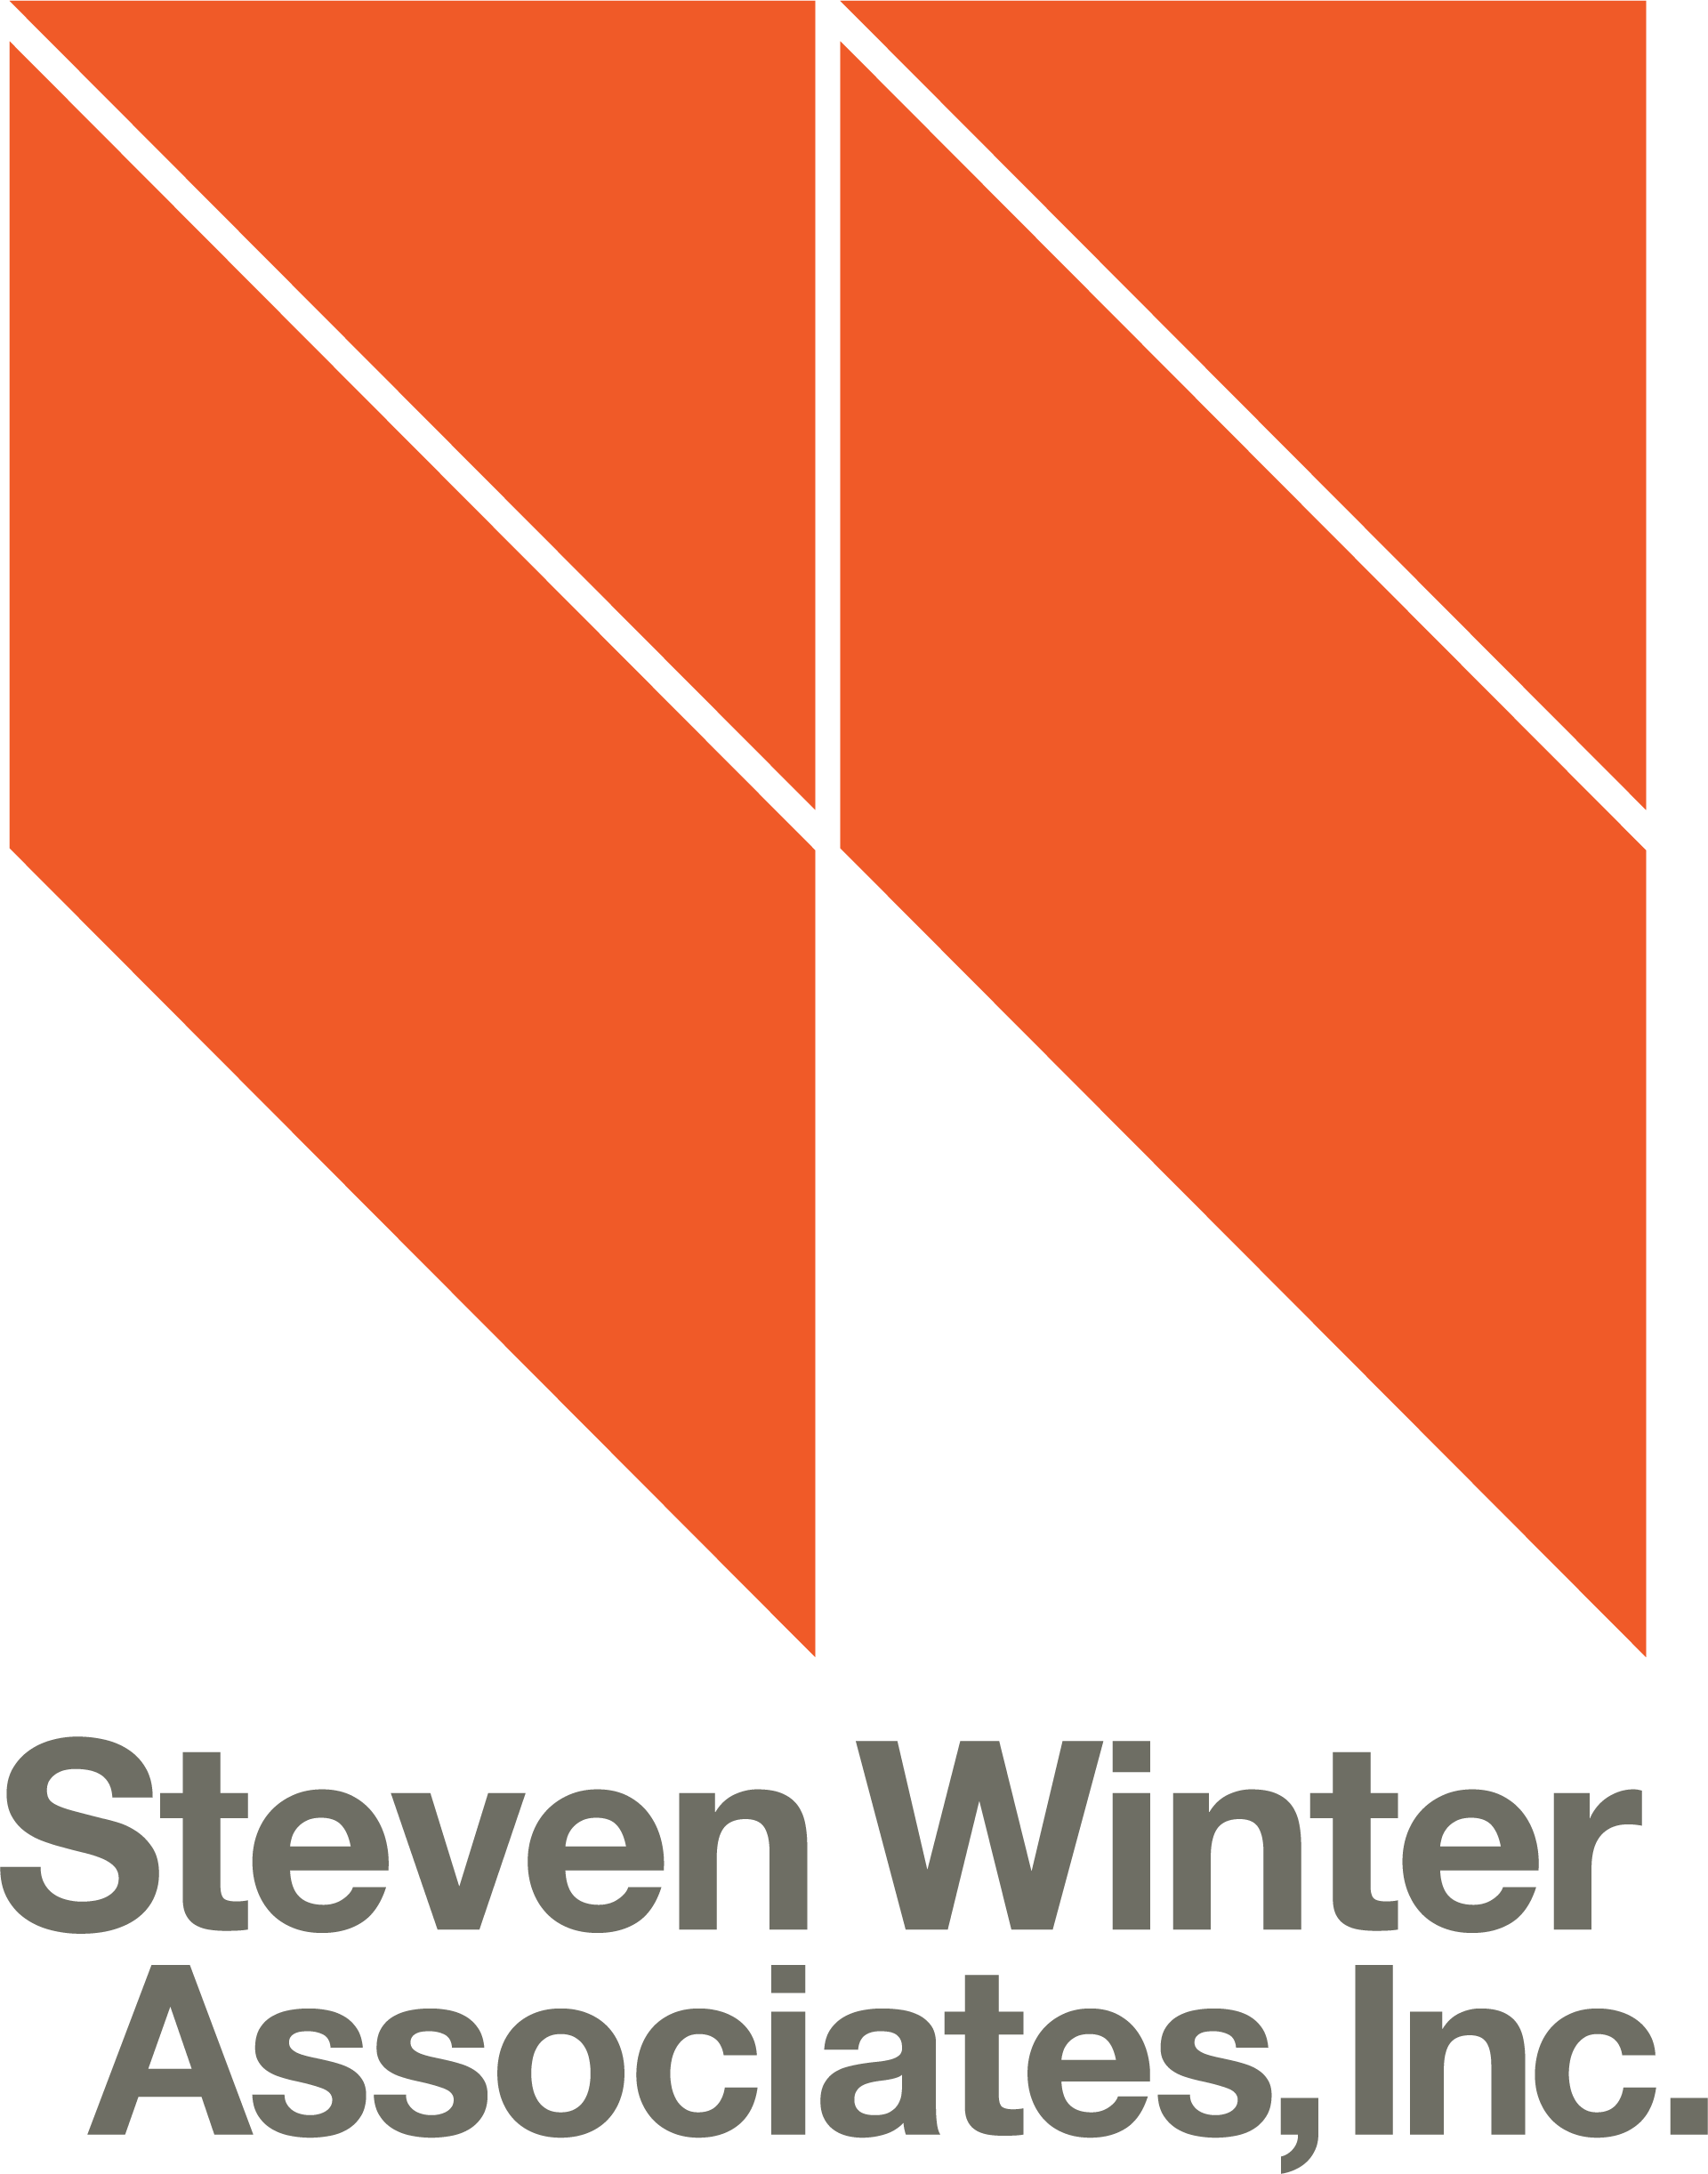 Steven Winter Associates